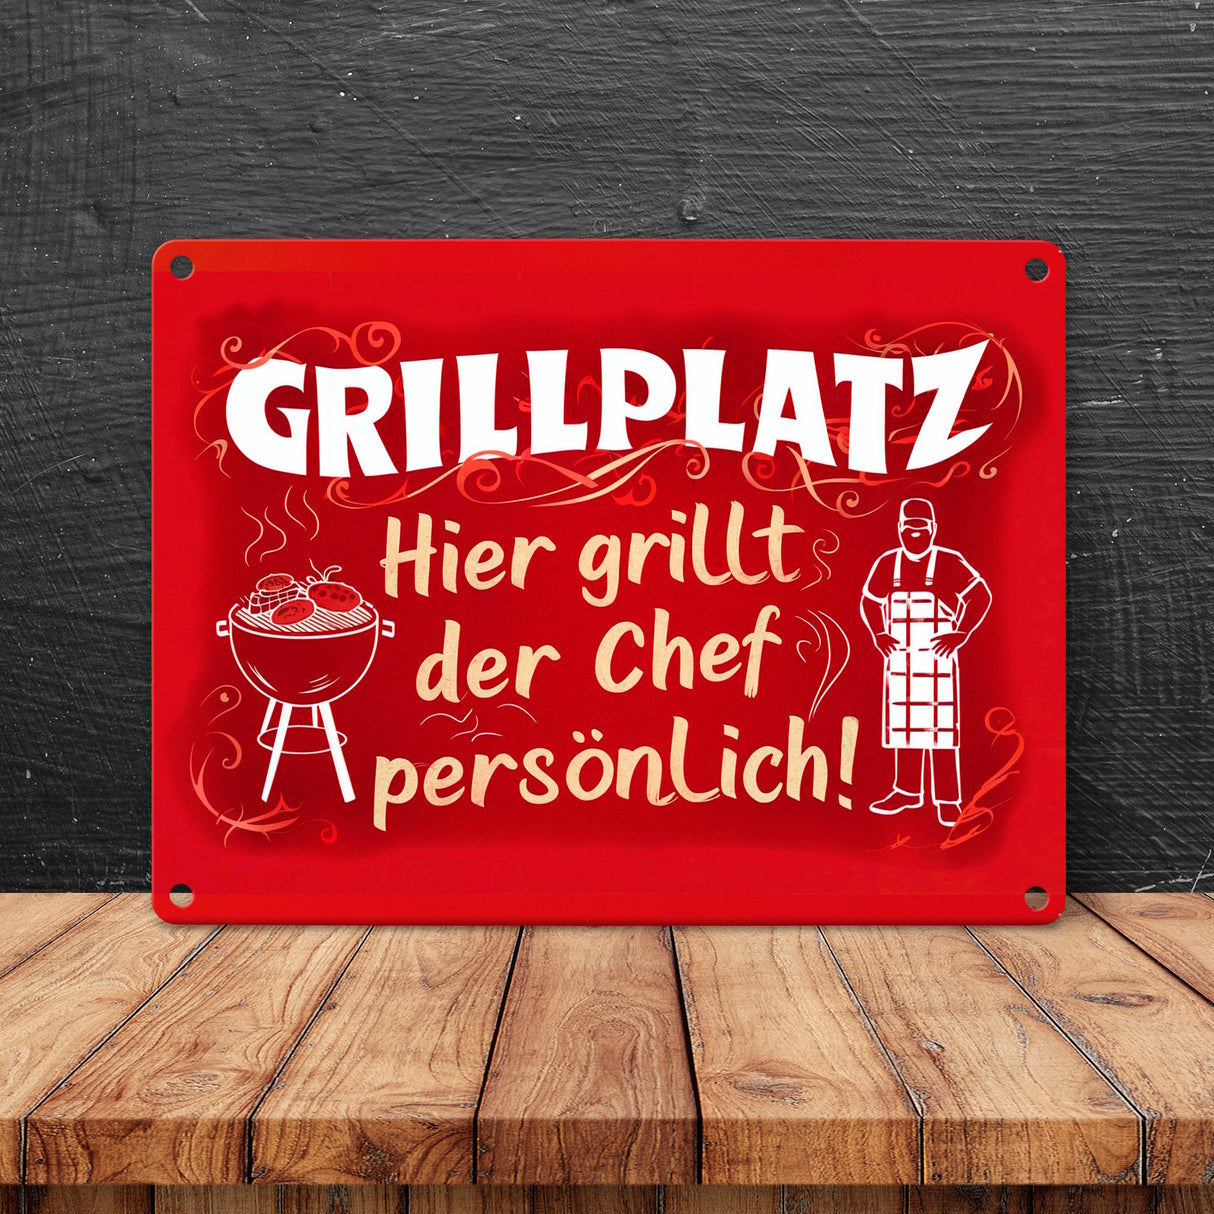 Grillplatz Metallschild in 15x20 cm - Chef grillt persönlich